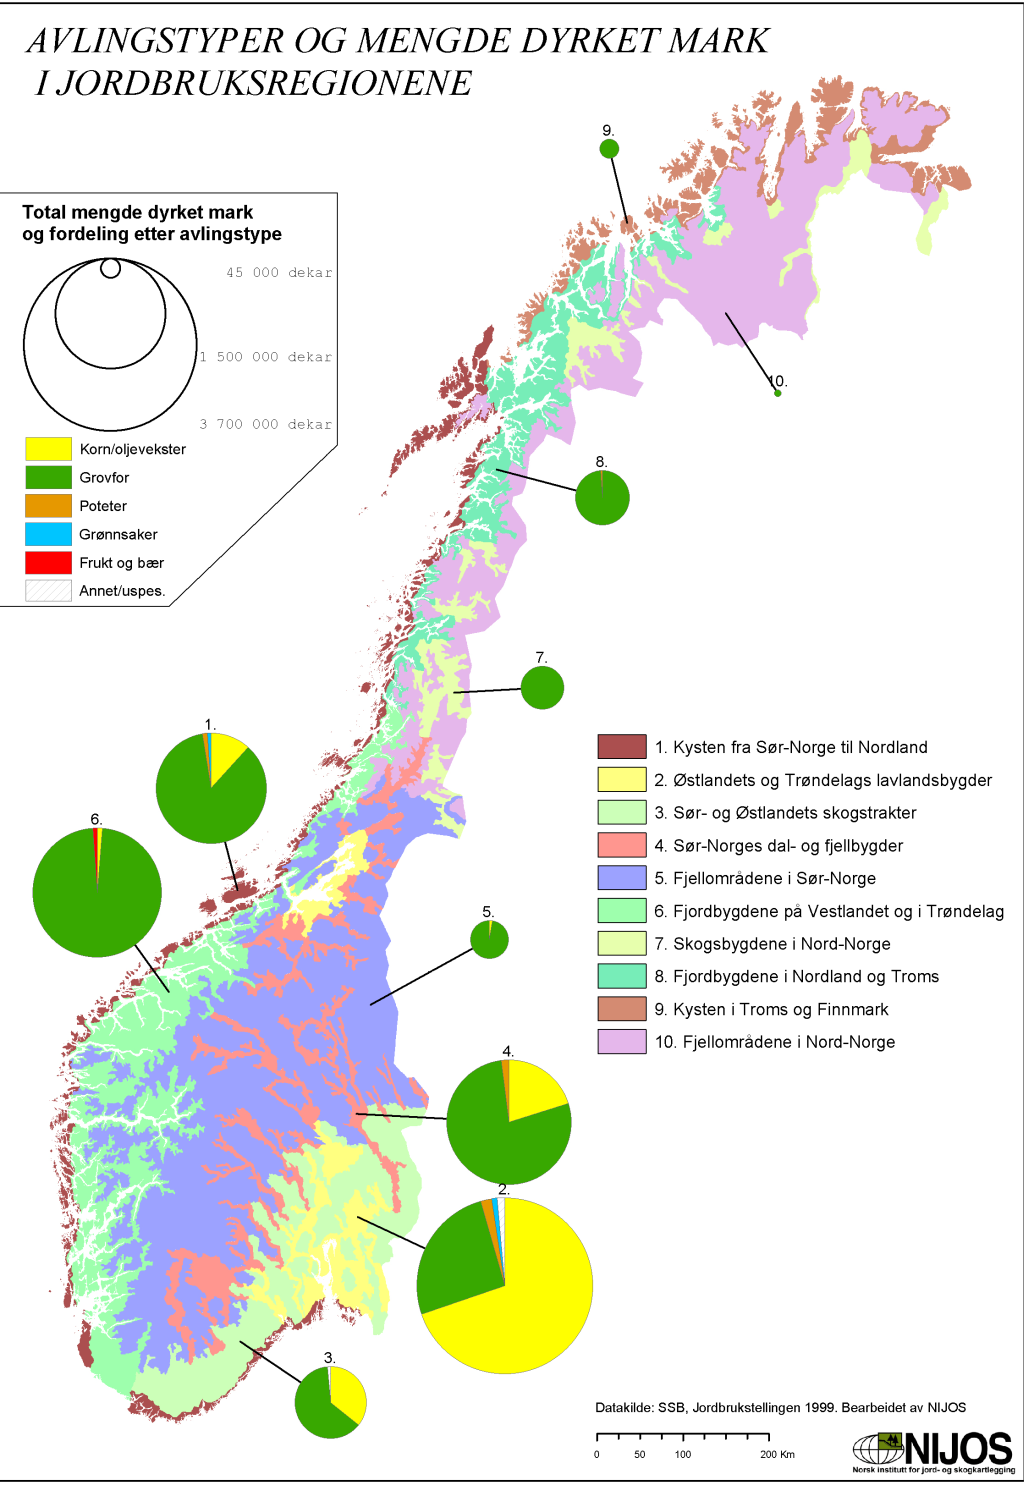 Dyrket mark i Norge: Korn i